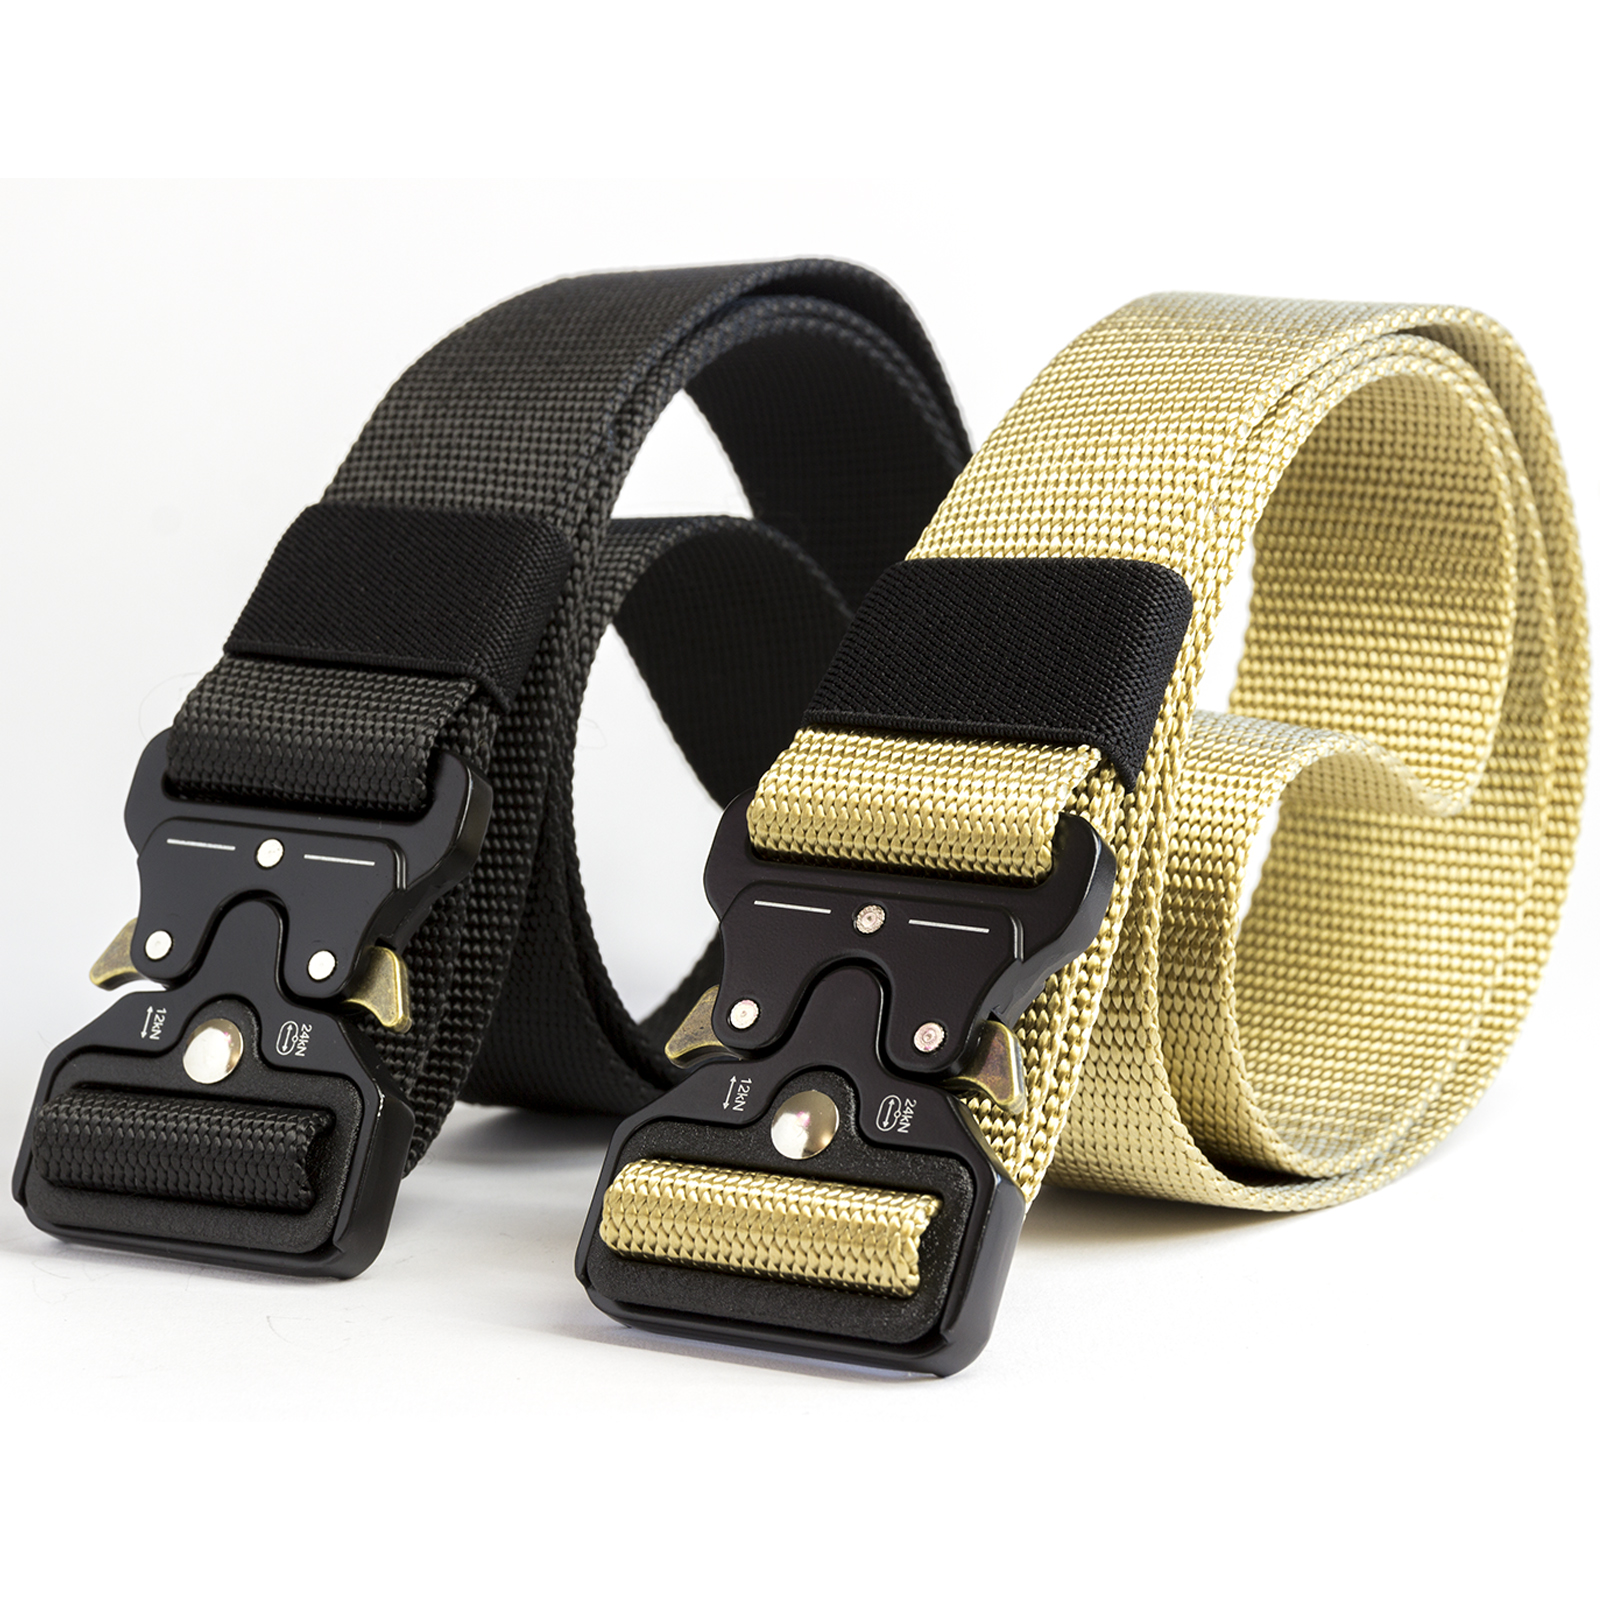 Cintura Cintura da Uomo in Tela Sgancio Rapido Fibbia in Metallo Militare in Nylon Cintura di Allenamento Cintura Tattica Militare per Uomo Cinturino Maschile Robusto 